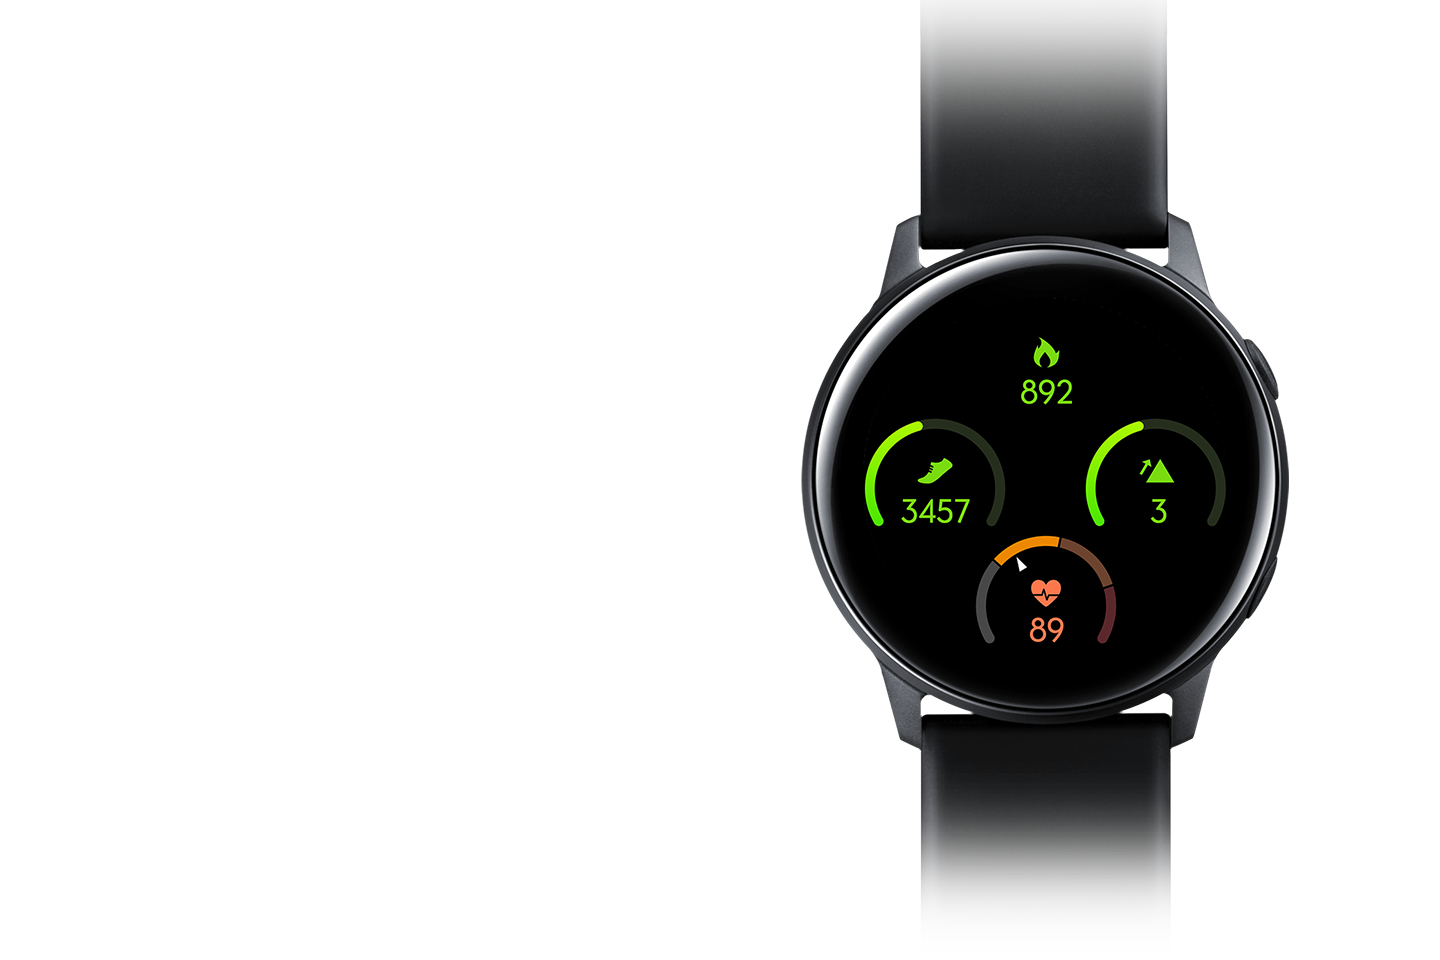 Smartwatch Samsung Galaxy Watch Active pokaże Ci informacje o spalonych kaloriach, przebytych krokach, ilości zdobytych pięter oraz pulsie, byś miał swoje postępy pod kontrolą